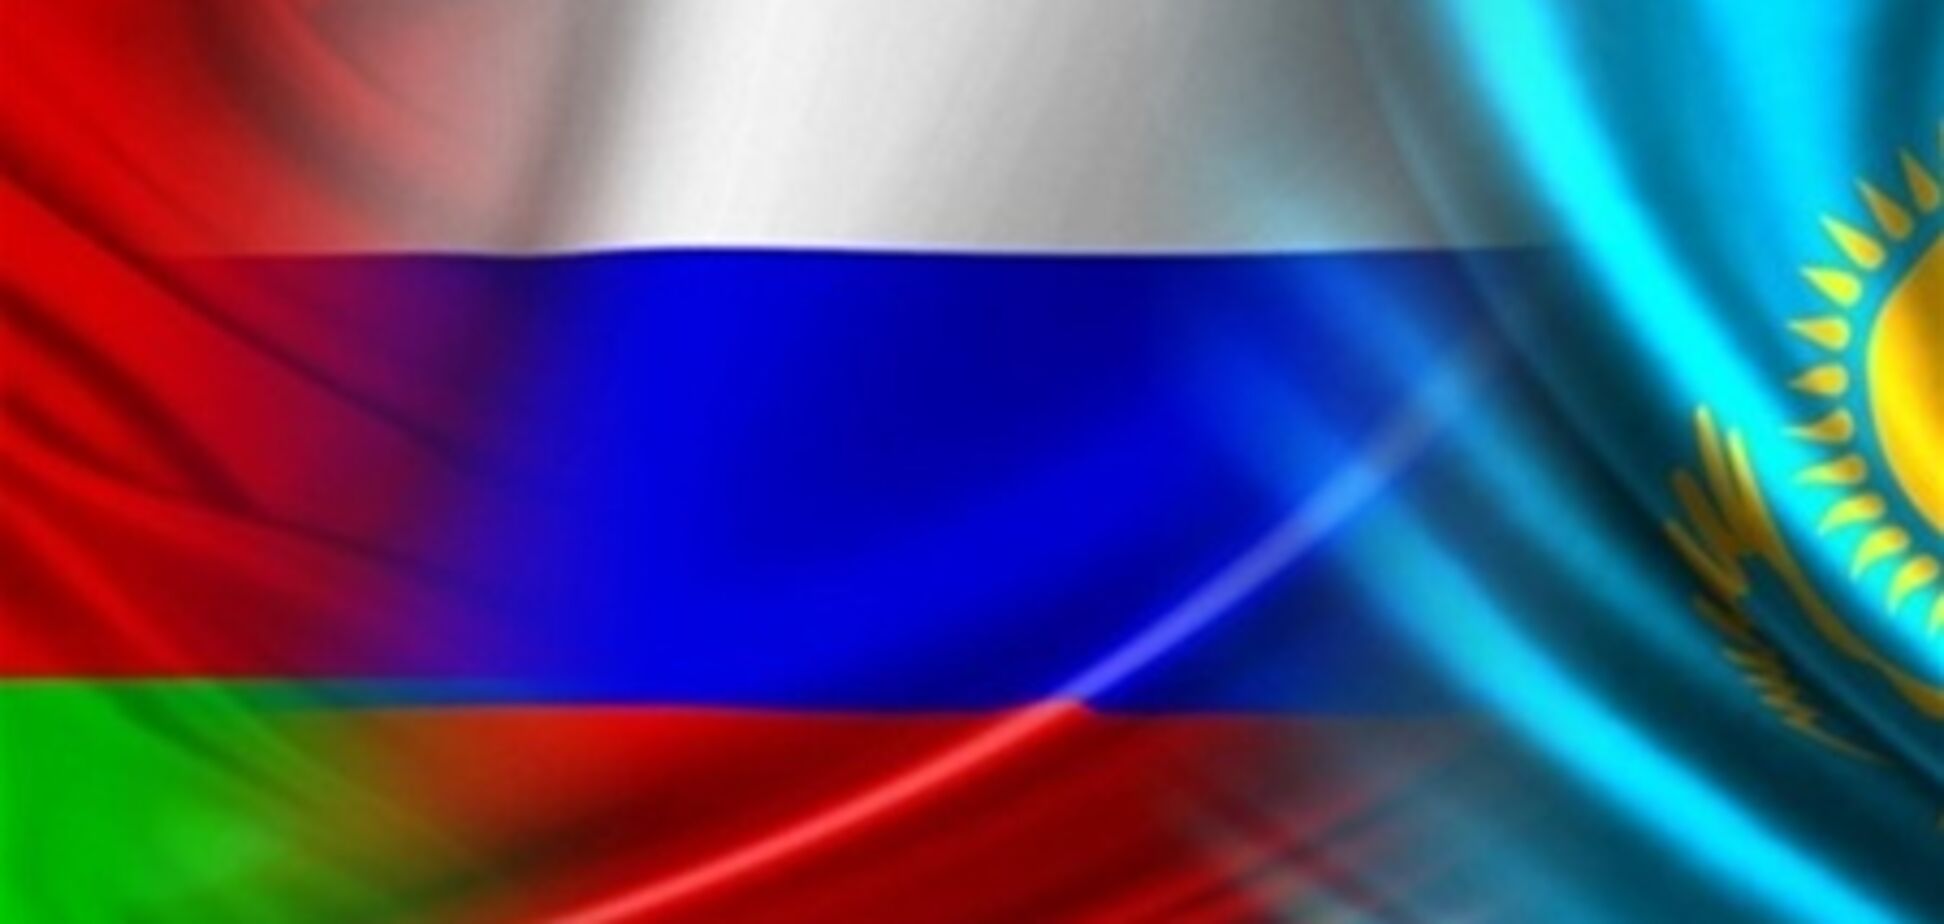 Вілкул: статус спостерігача в МС зблизить Україну з його країнами-учасницями